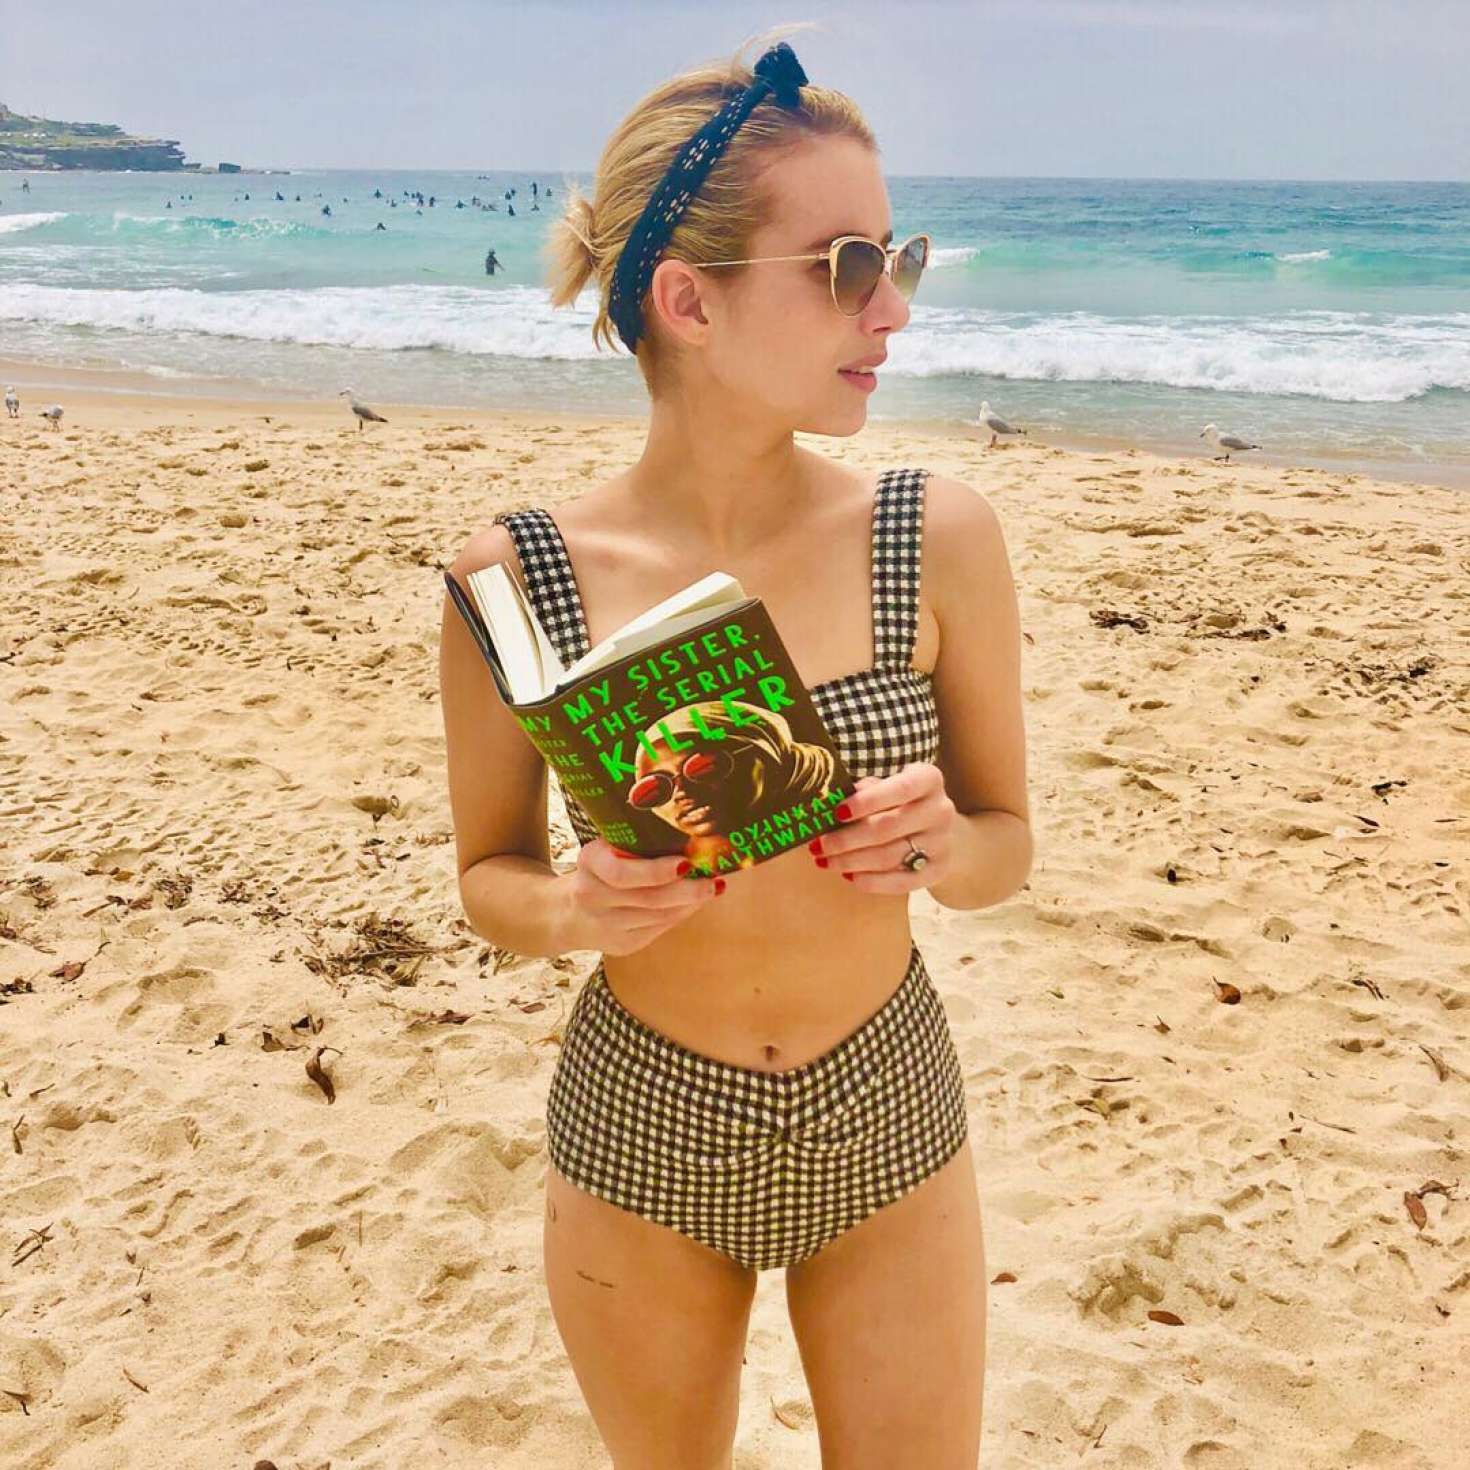 Emma Roberts Swim Suit Wallpapers